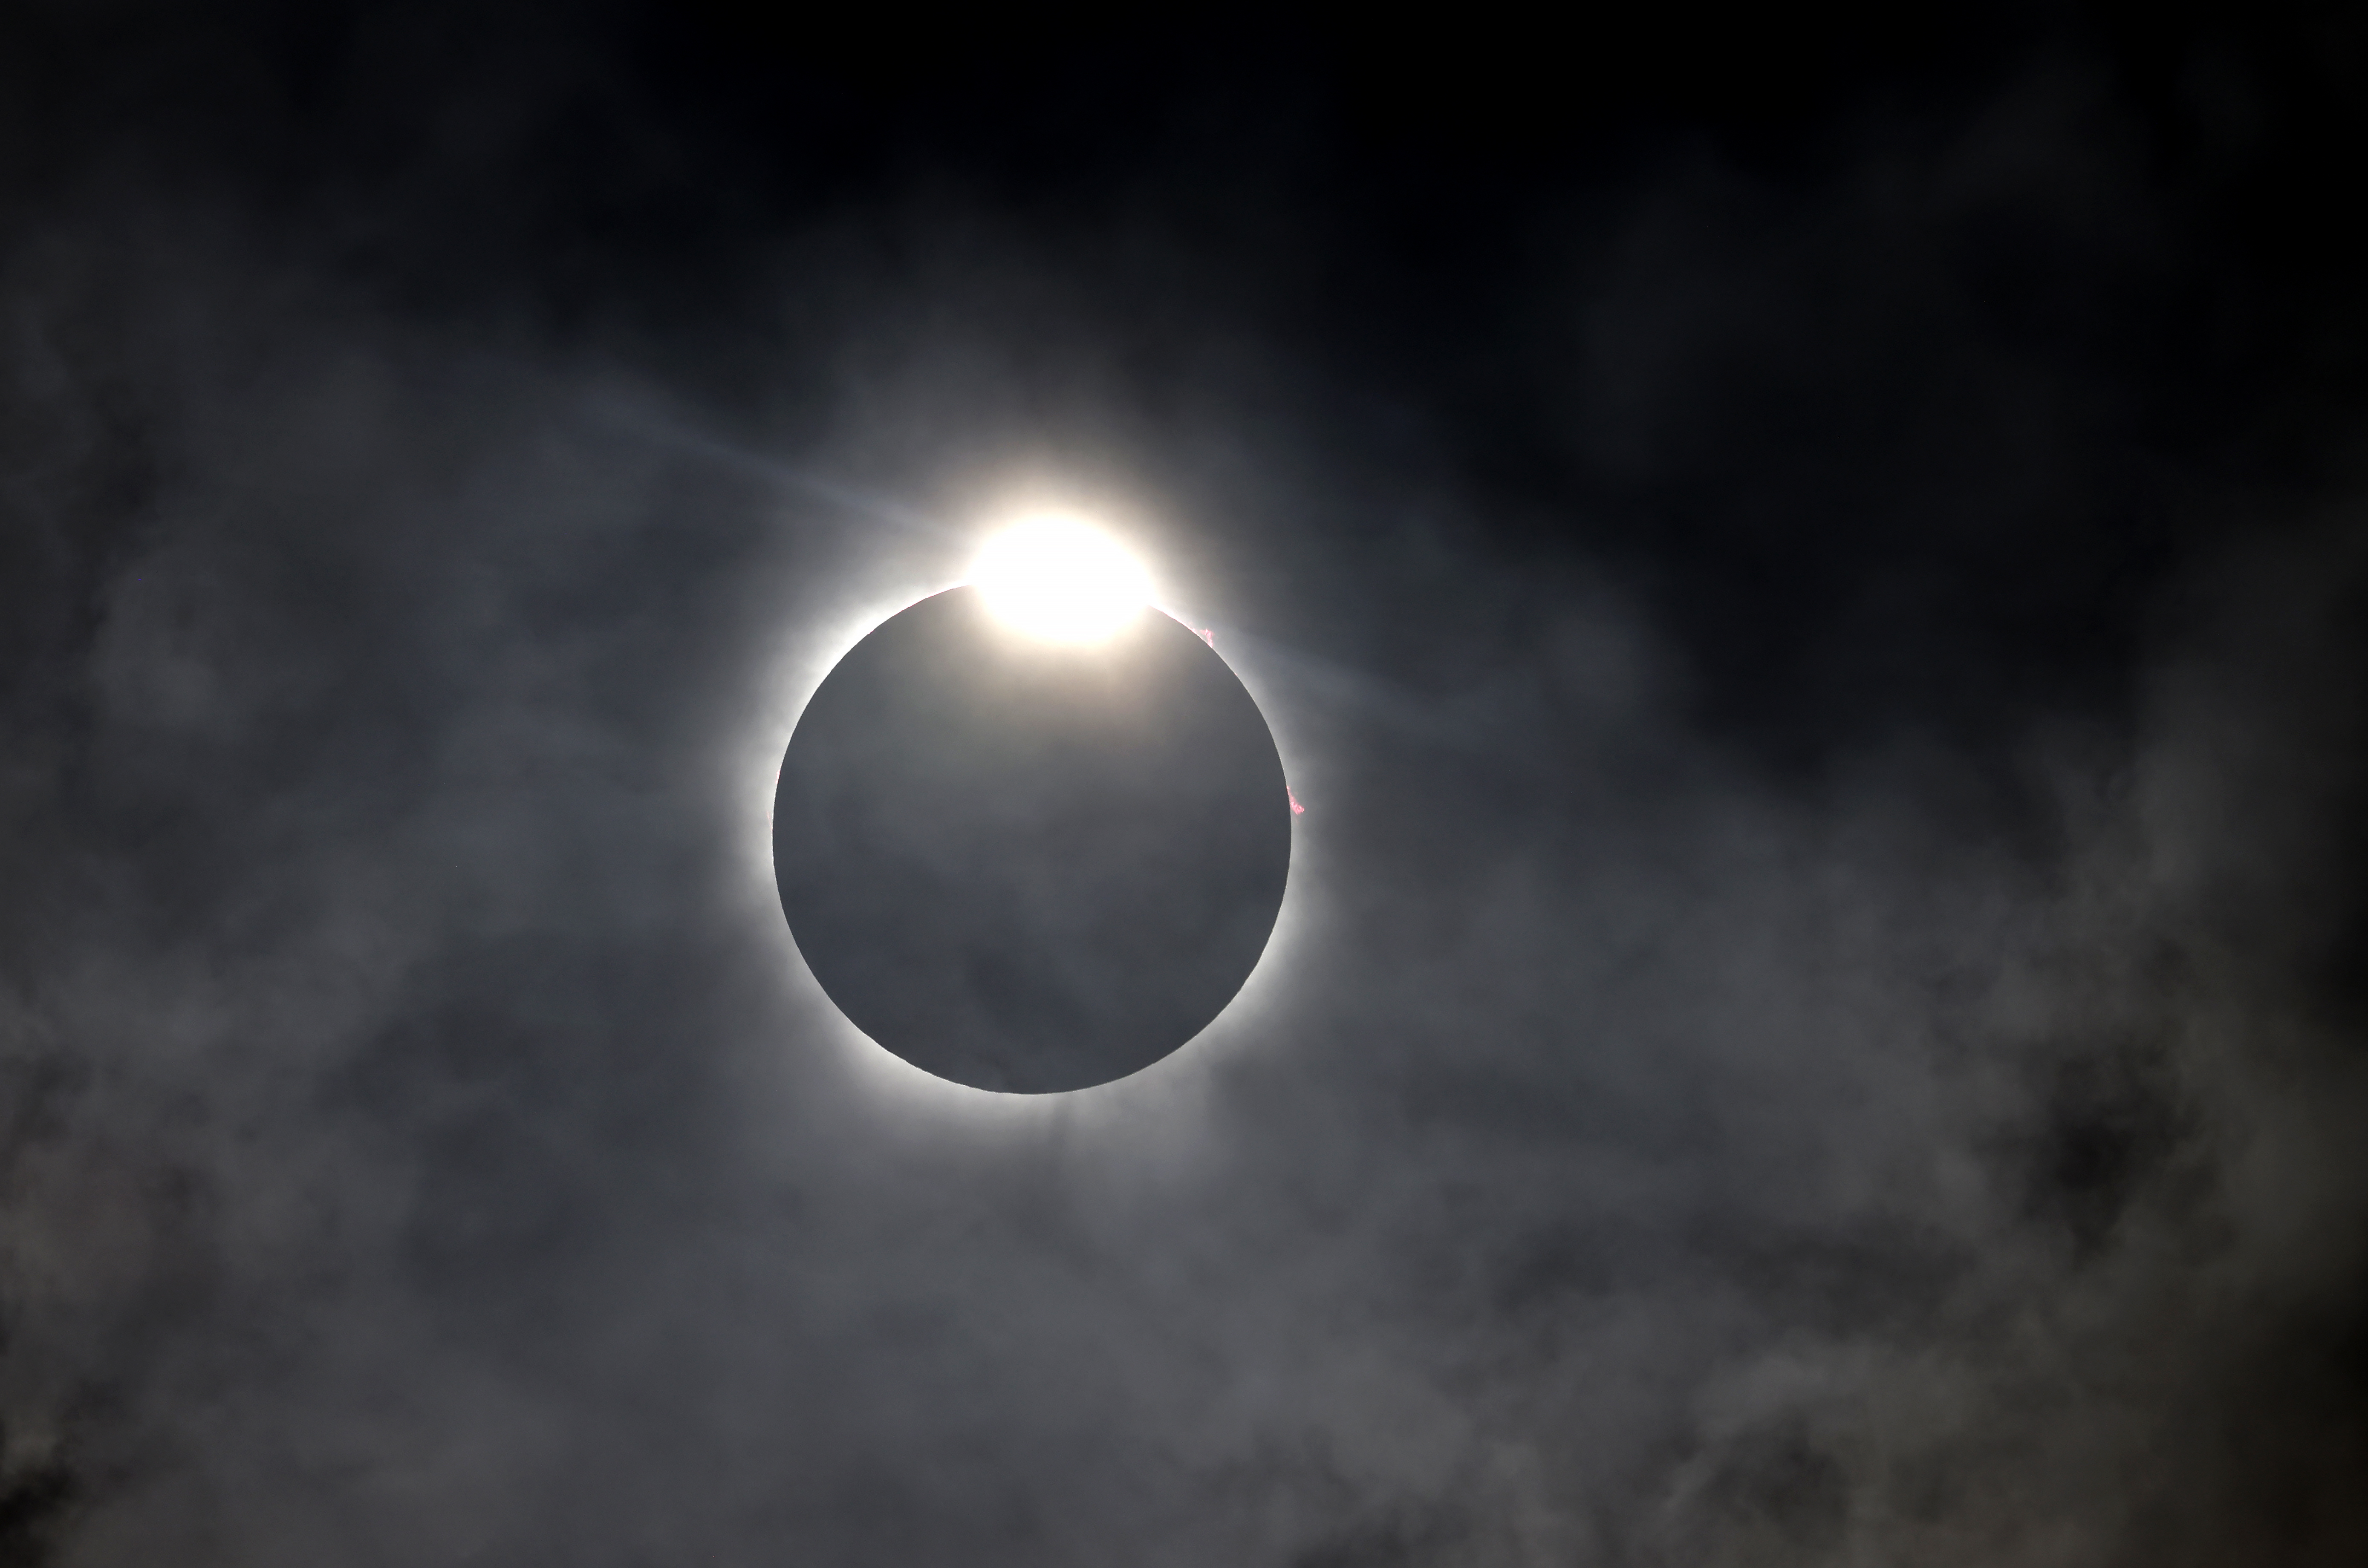 当月亮遮挡德克萨斯州沃思堡上空的太阳时，就会出现钻石环效应。